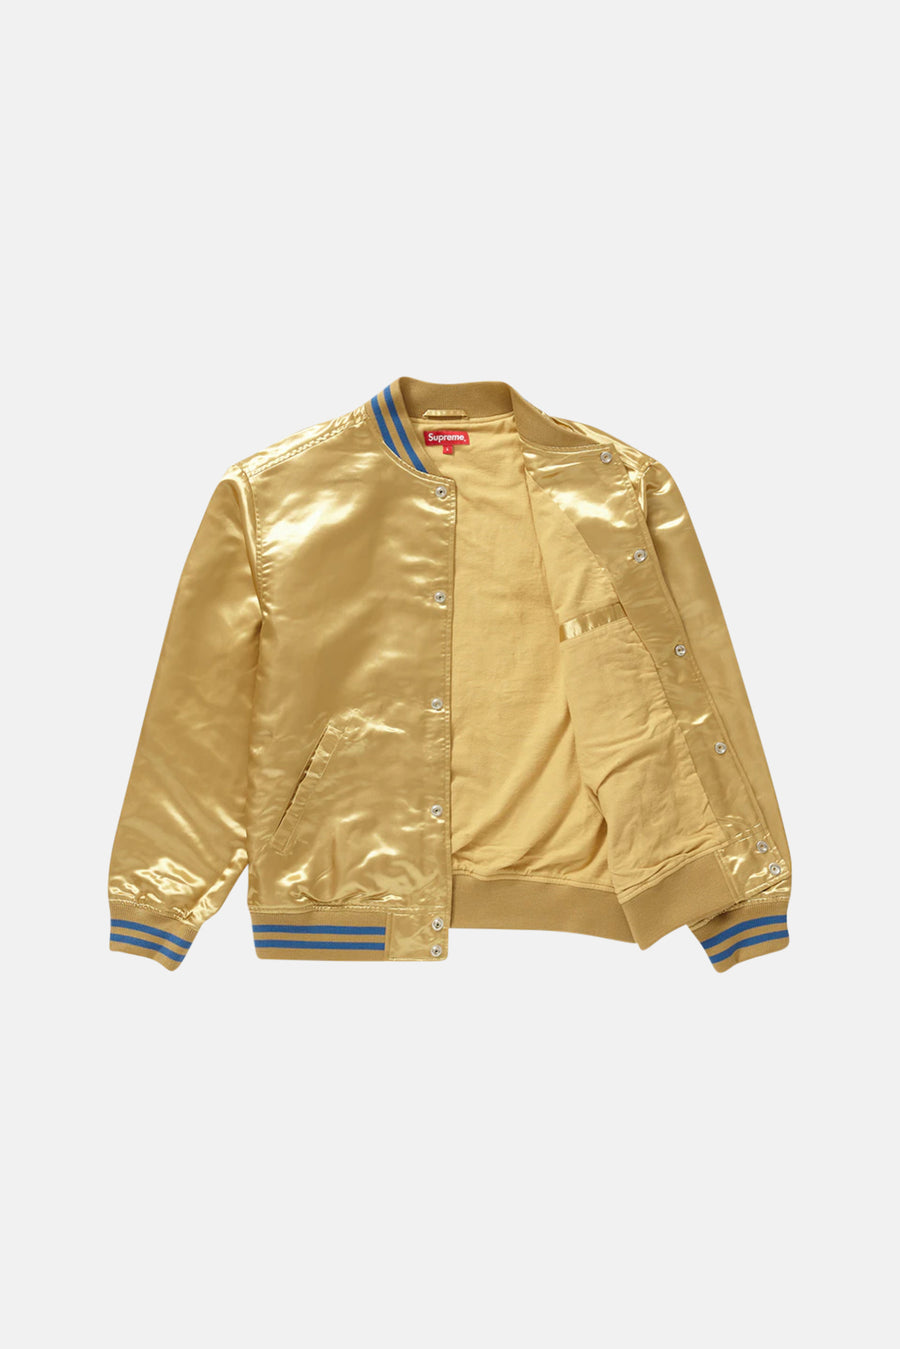 x Thrasher Satin Varsity Jacket Gold - blueandcream